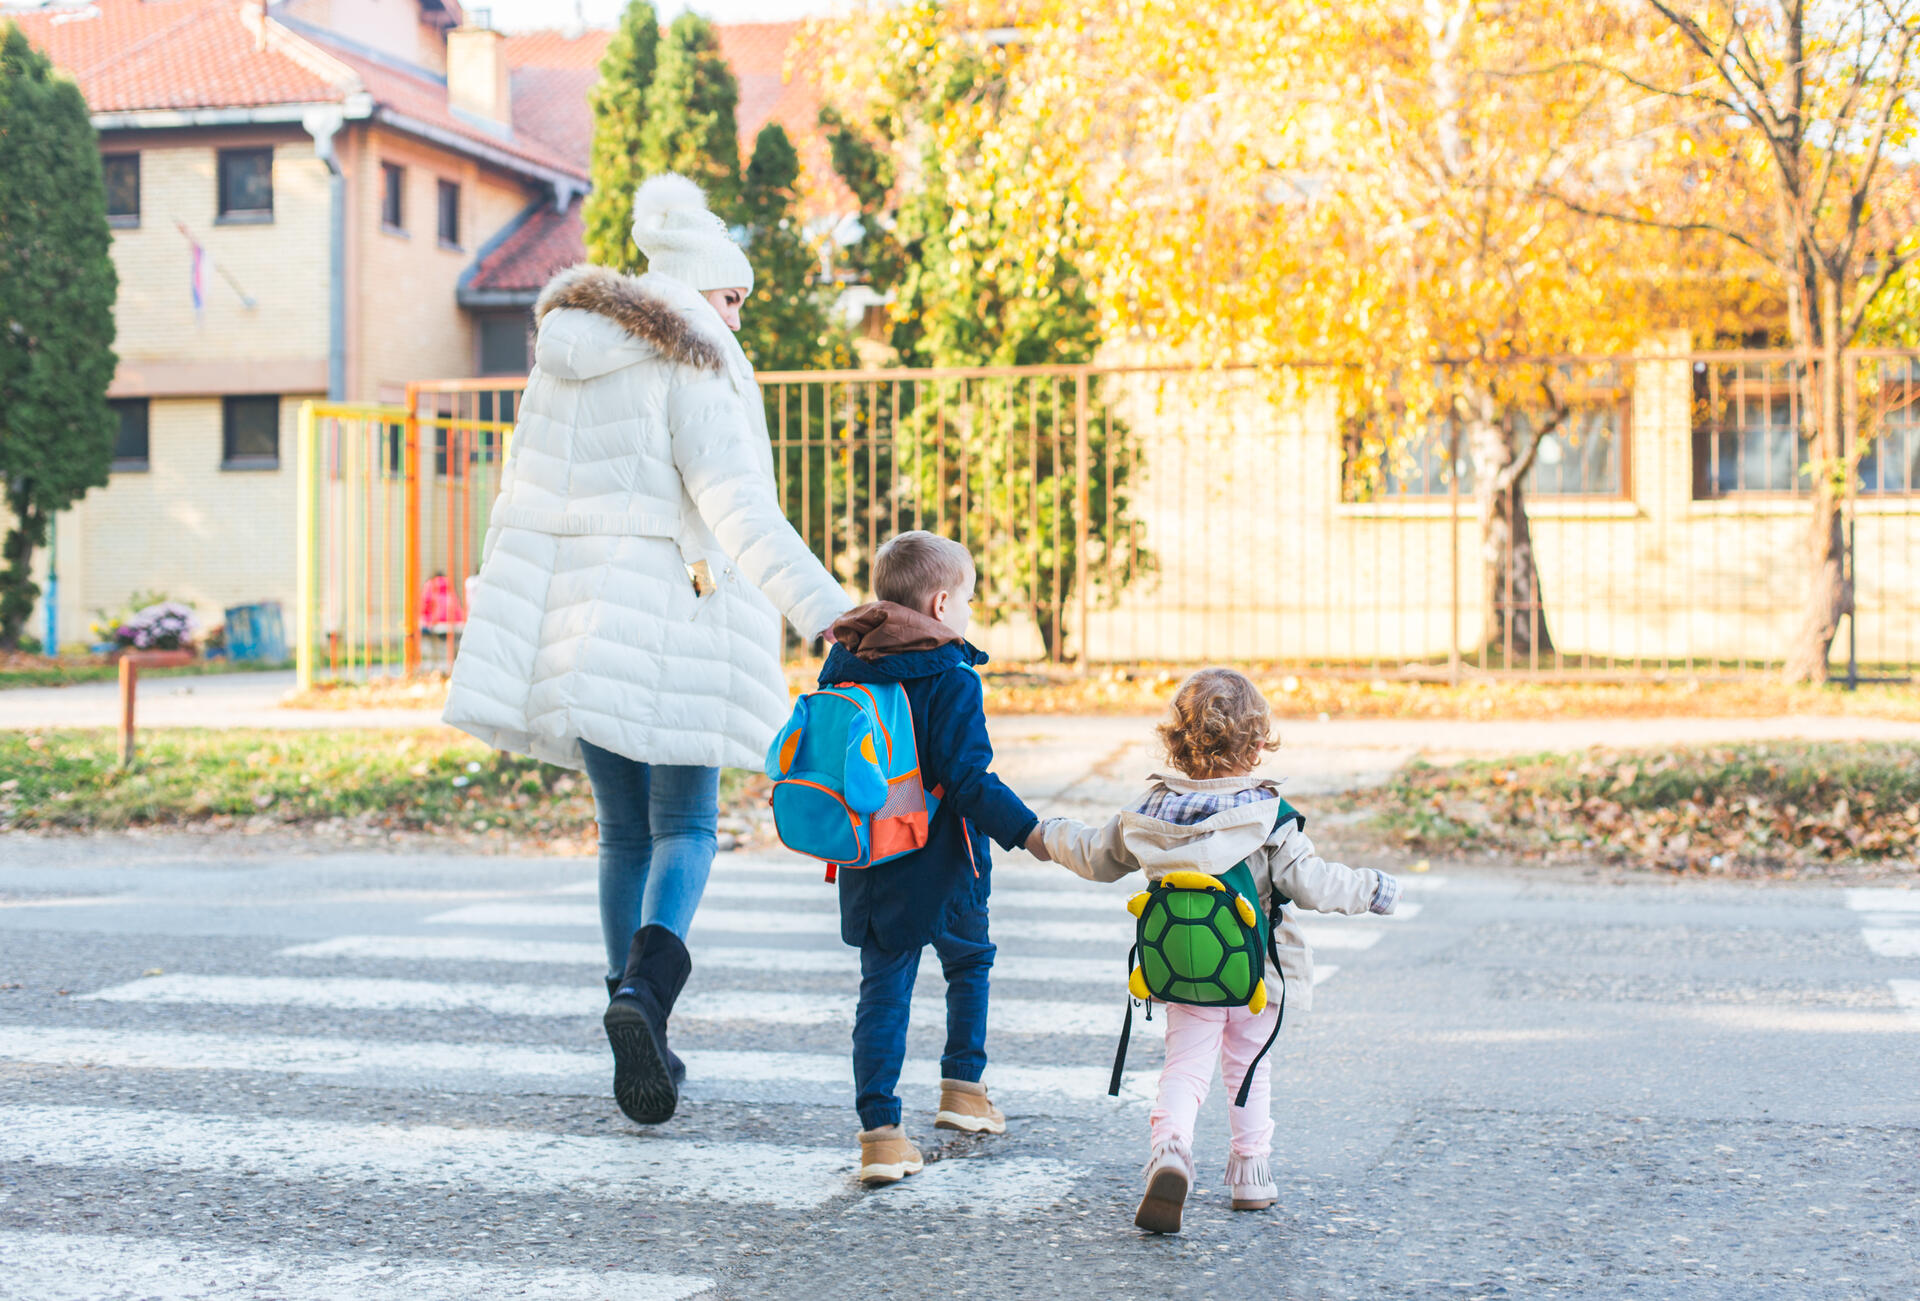 Im Sinne eines nachhaltigen Schulstartes sollten die Eltern ihren Nachwuchs besser zu Fuß oder mit dem Rad zur Schule begleiten – oder in einer Gruppe mit anderen Kindern dorthin laufen lassen.